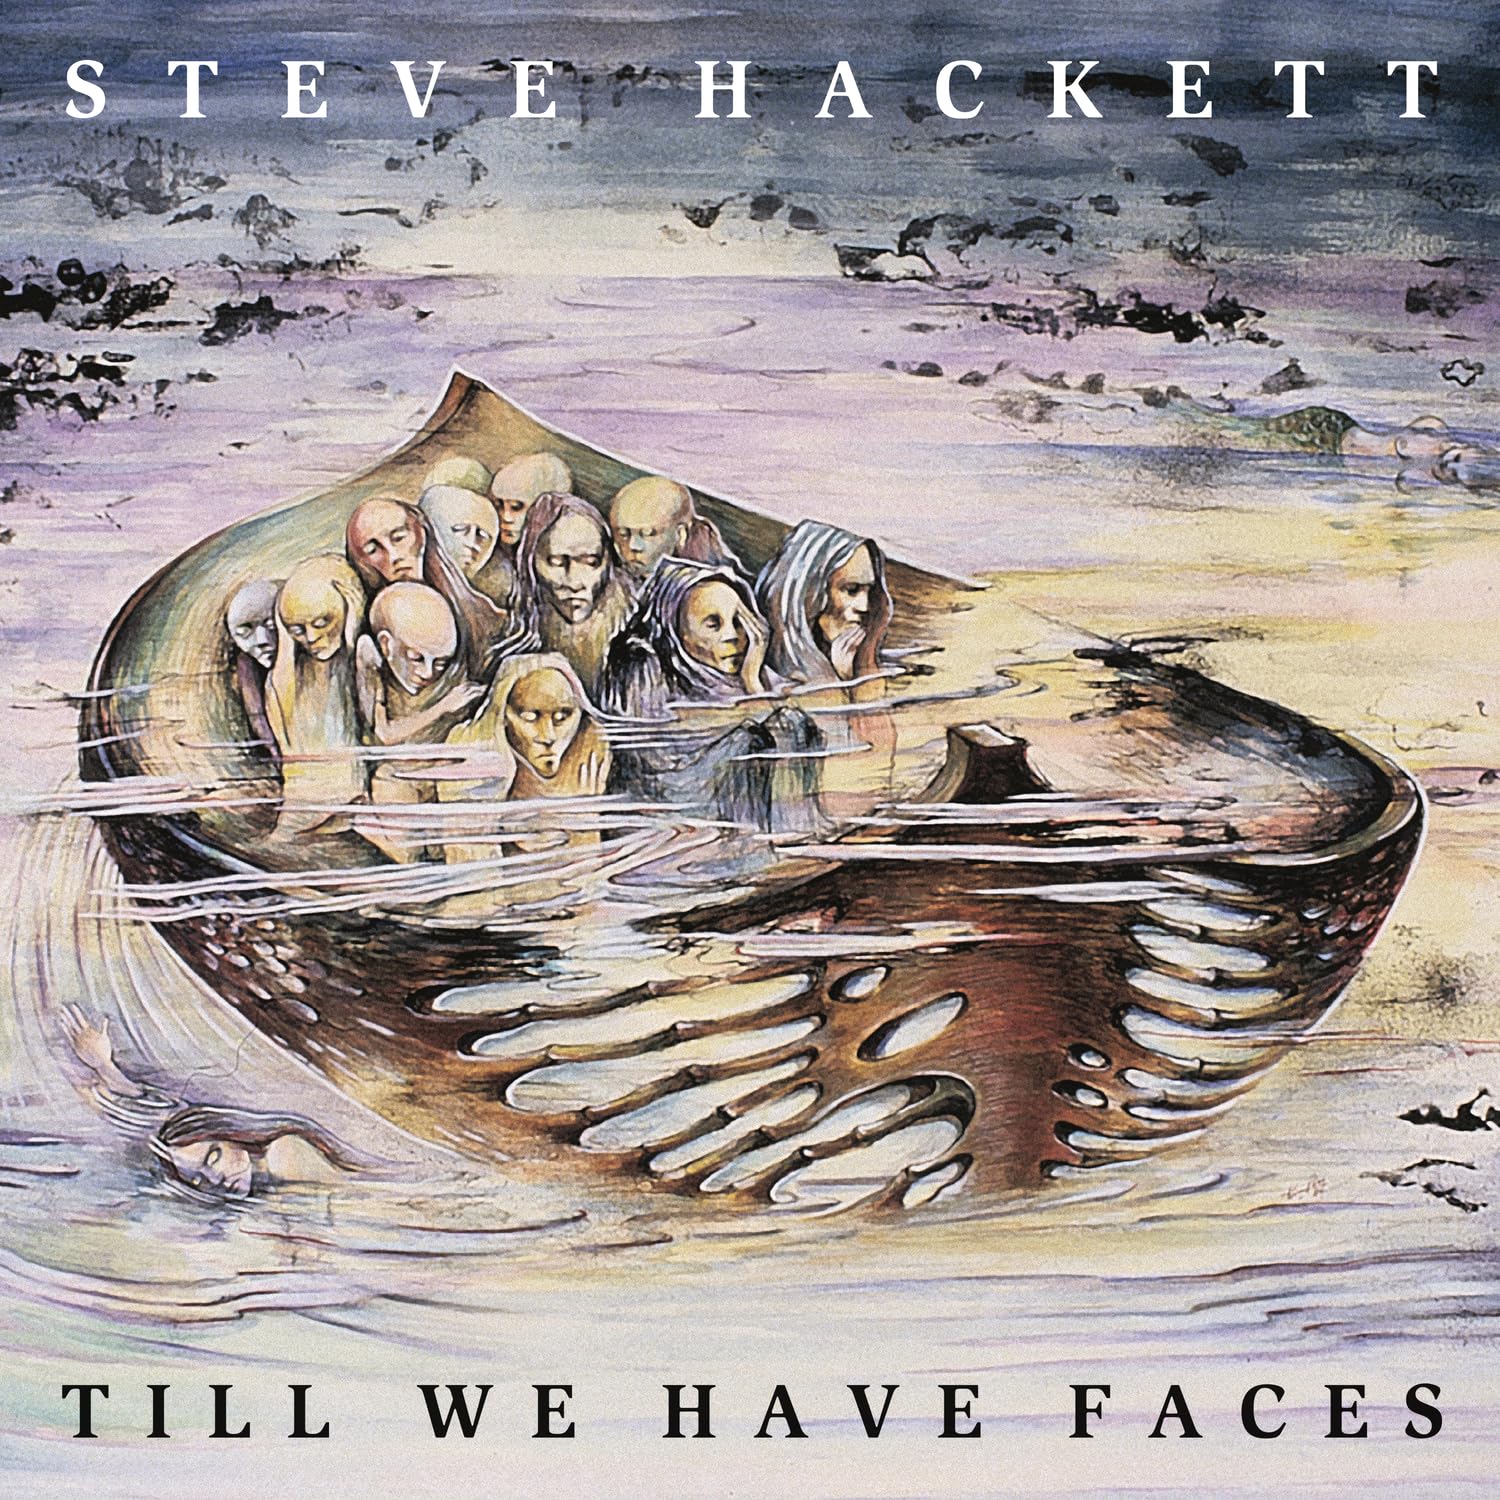 HACKETT STEVE – TILL WE HAVE FACES LP